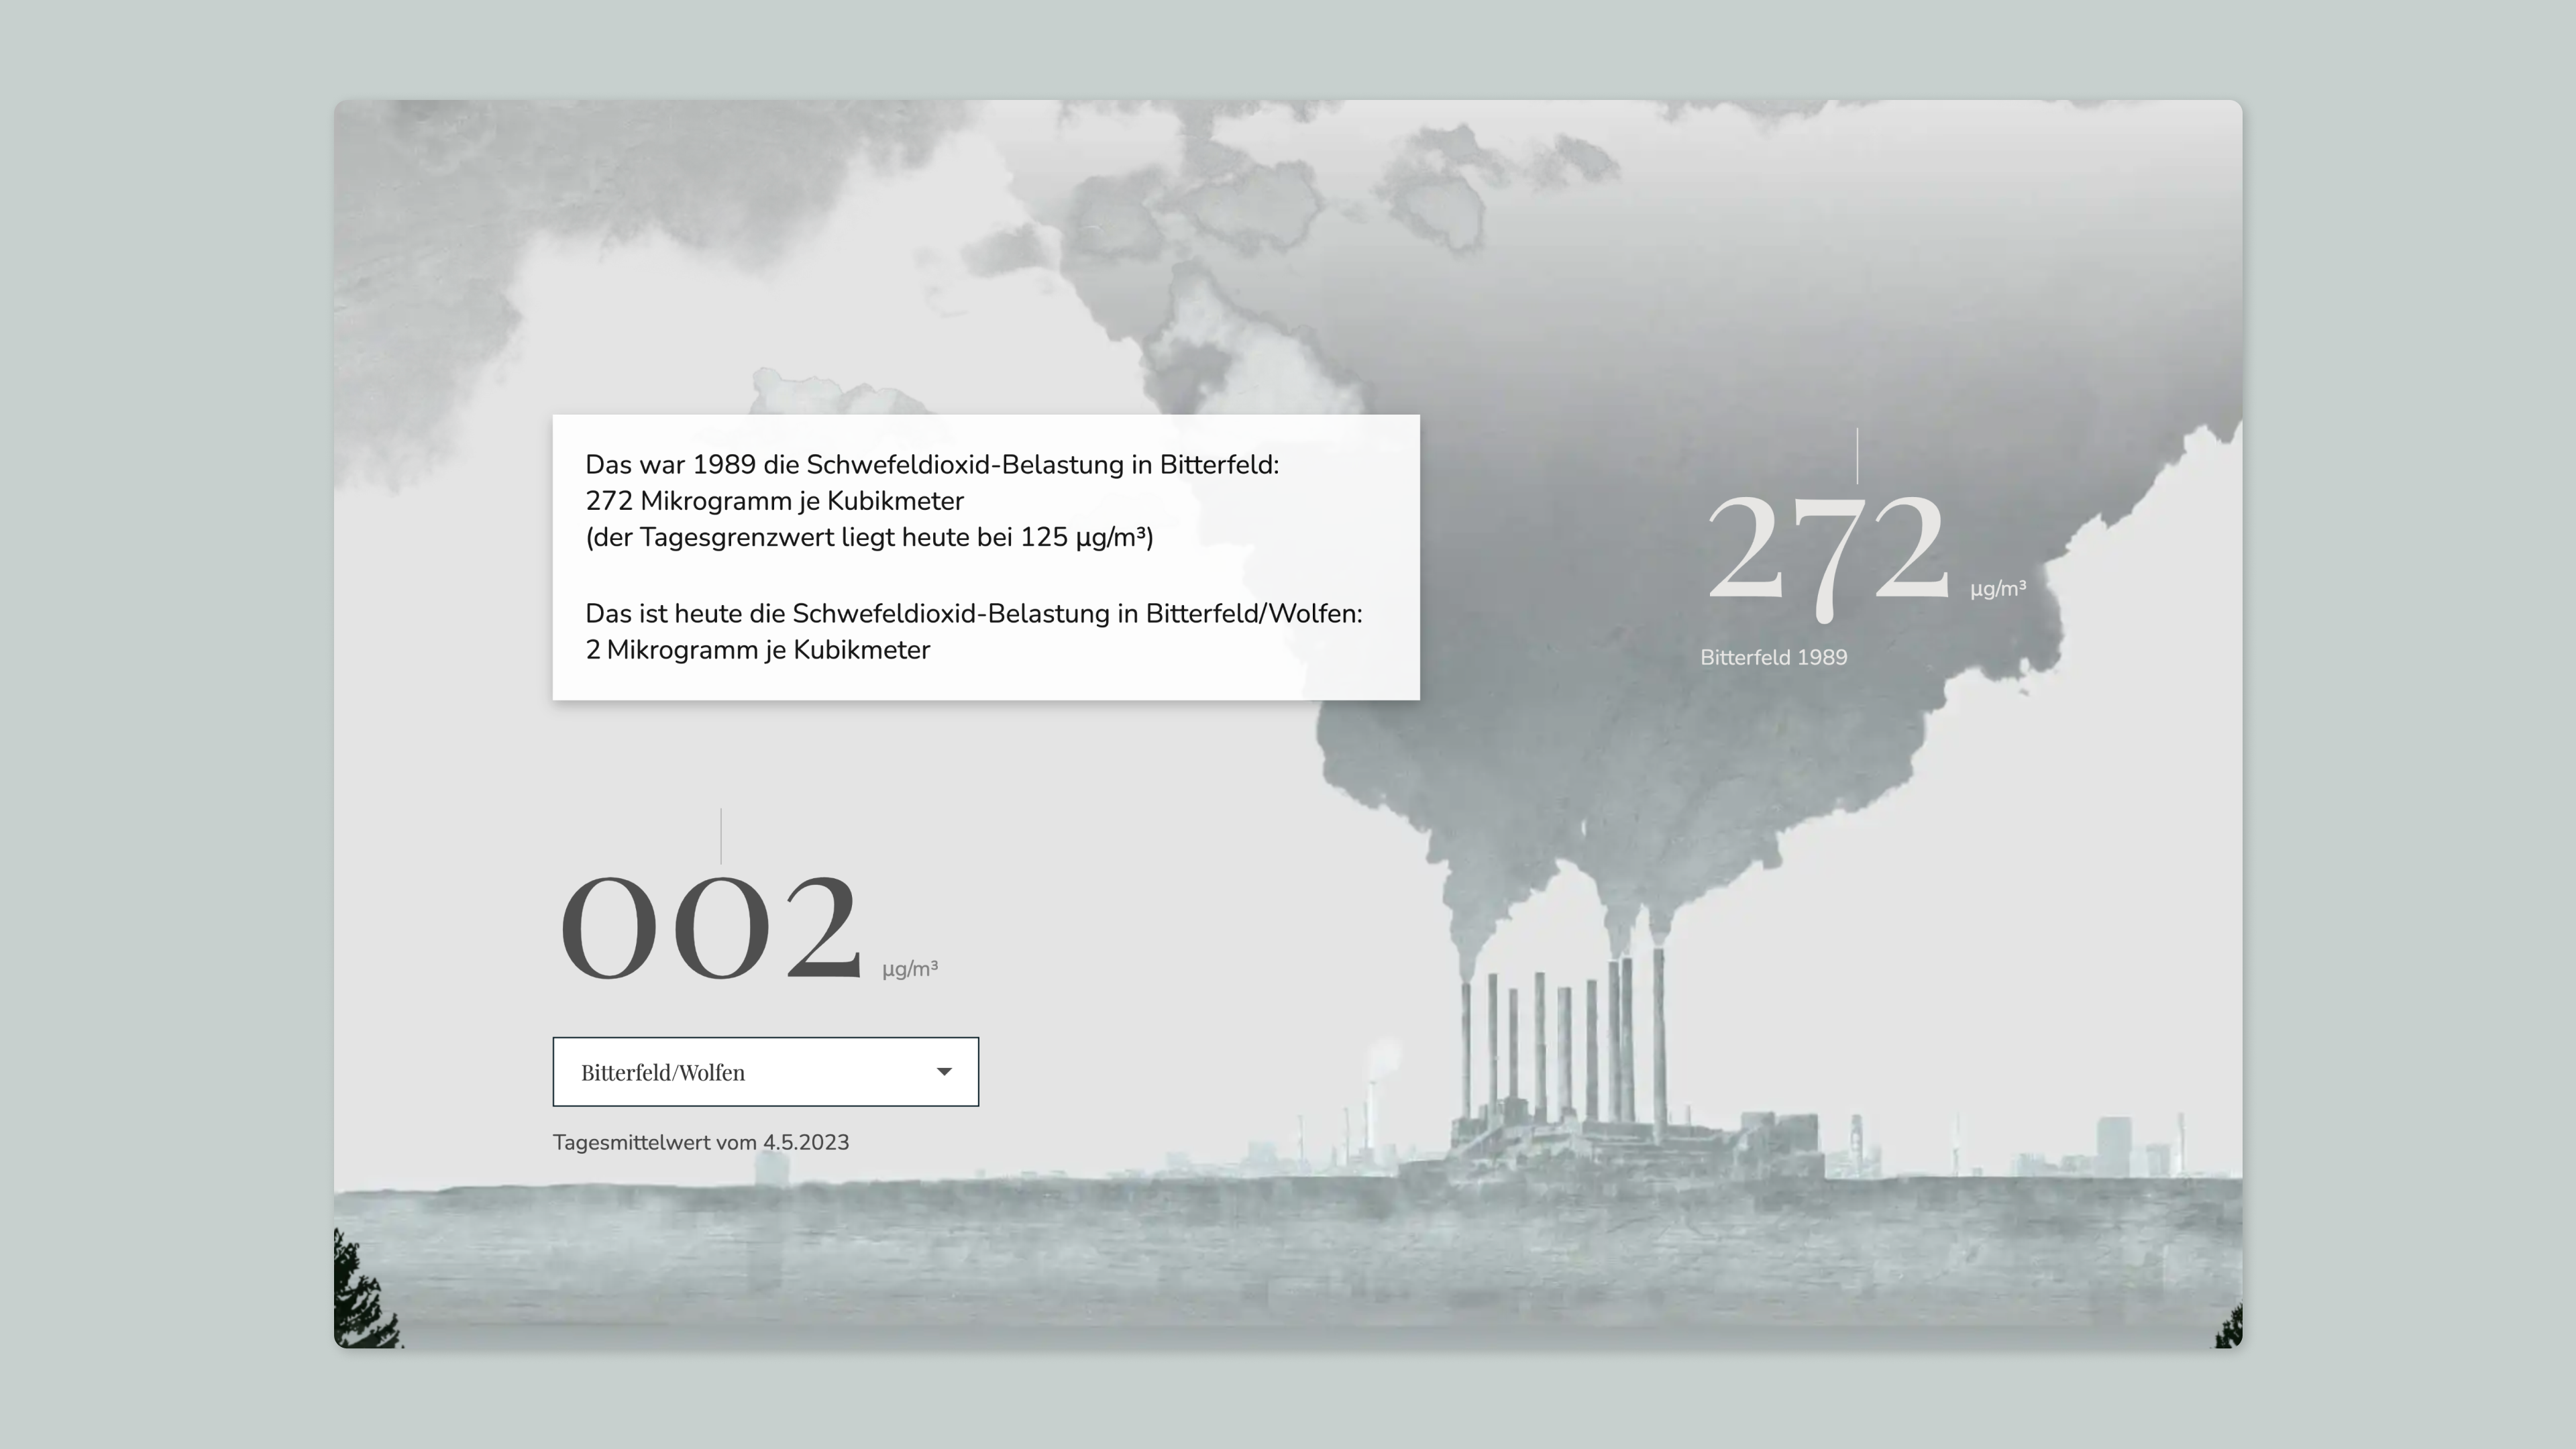 Eine Fabrik stößt eine große Menge Rauch aus. Darauf ist die Zahl 272 zu lesen, die die Schwefeldioxid-Belastung in Bitterfeld im Jahr 1998 angibt.